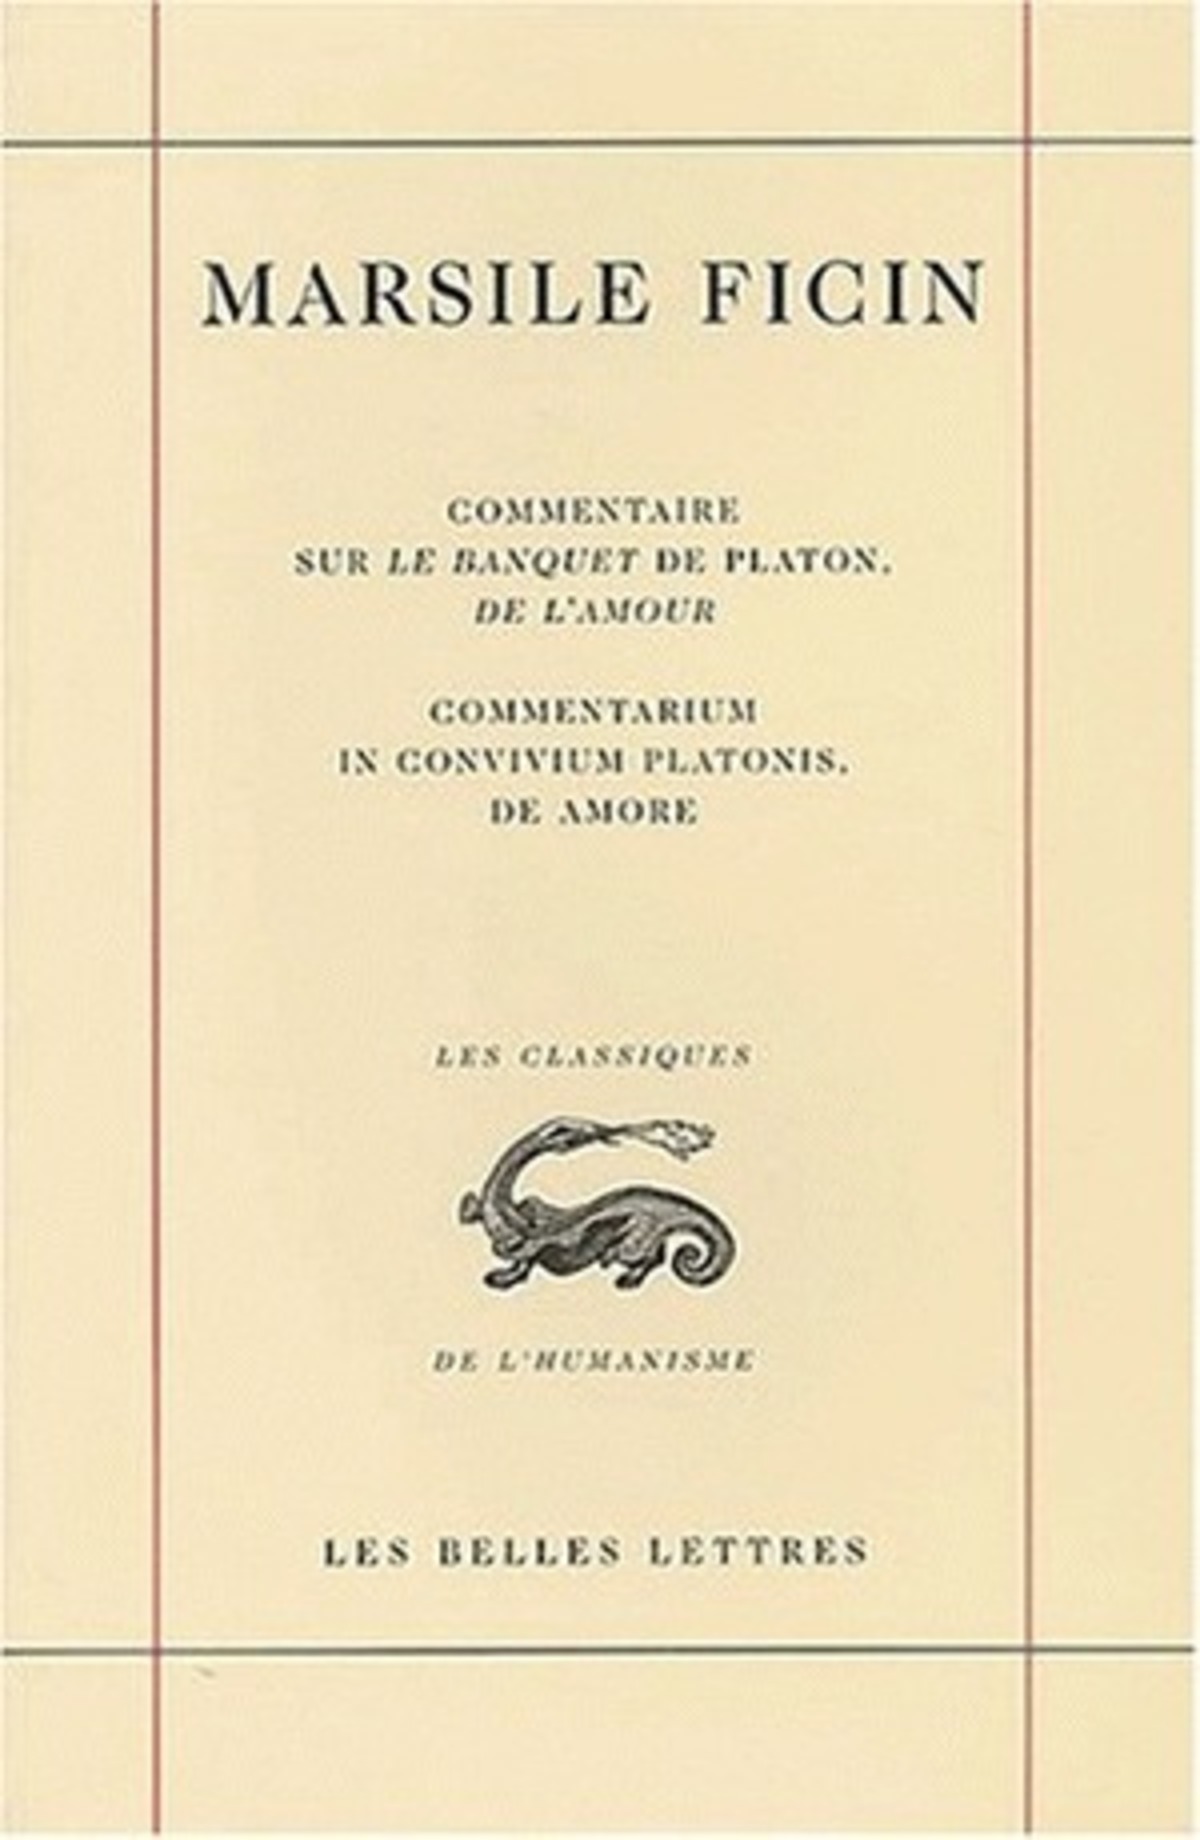 Commentaire sur le Banquet de Platon, De l'amour / Commentarium in convivium platonis, De Amore